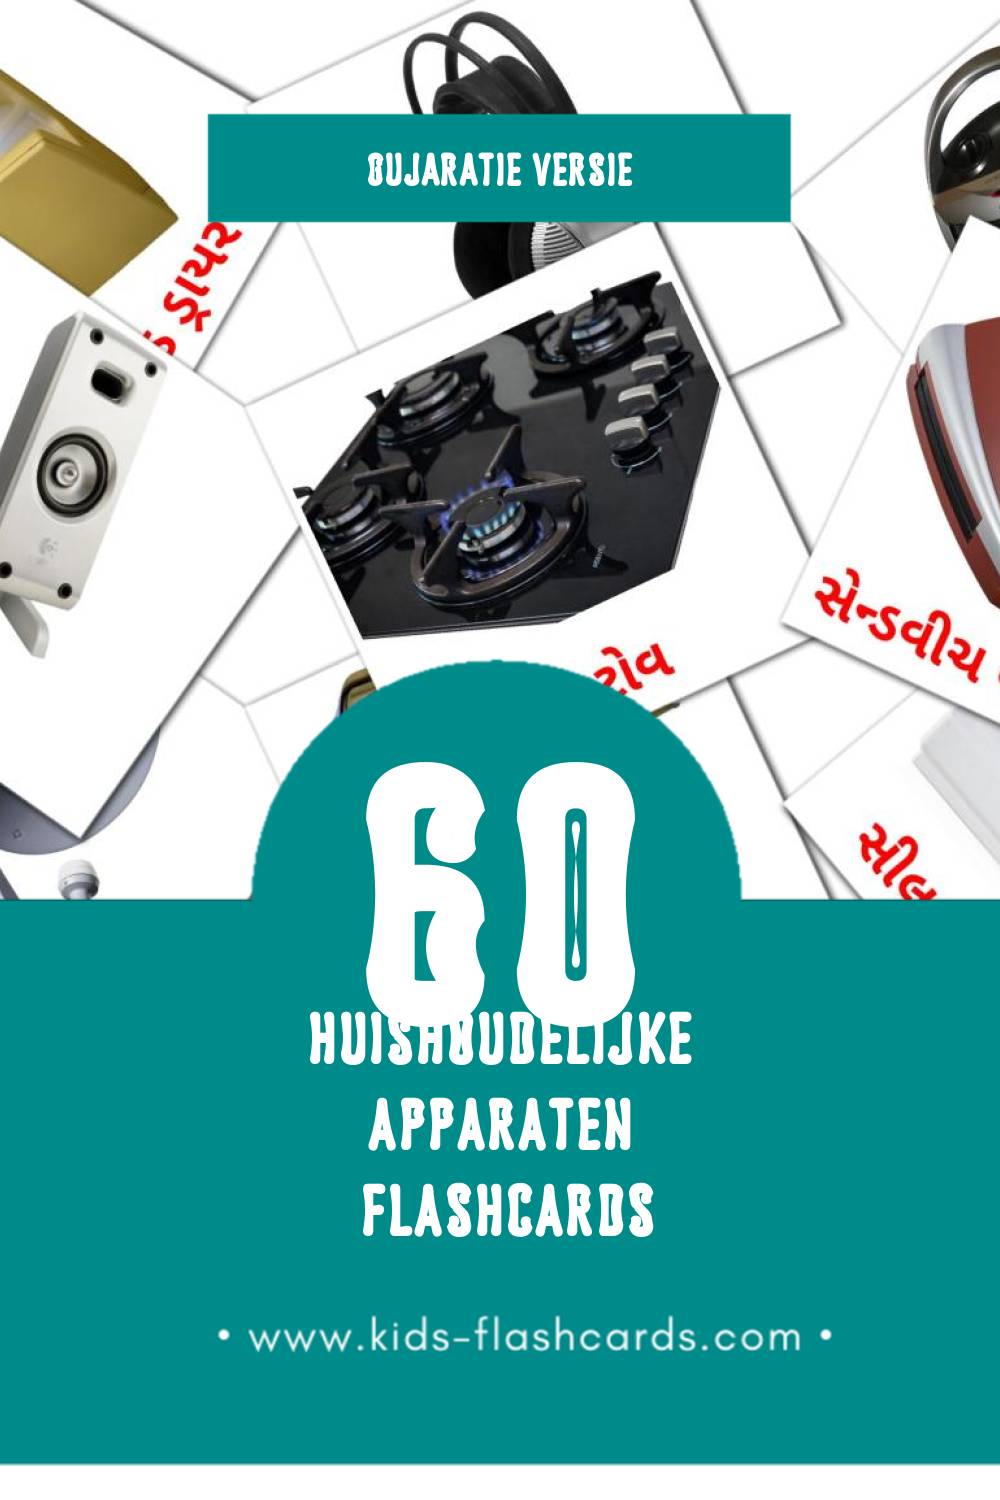 Visuele ઘરગથ્થુ સાધનો Flashcards voor Kleuters (60 kaarten in het Gujarati)